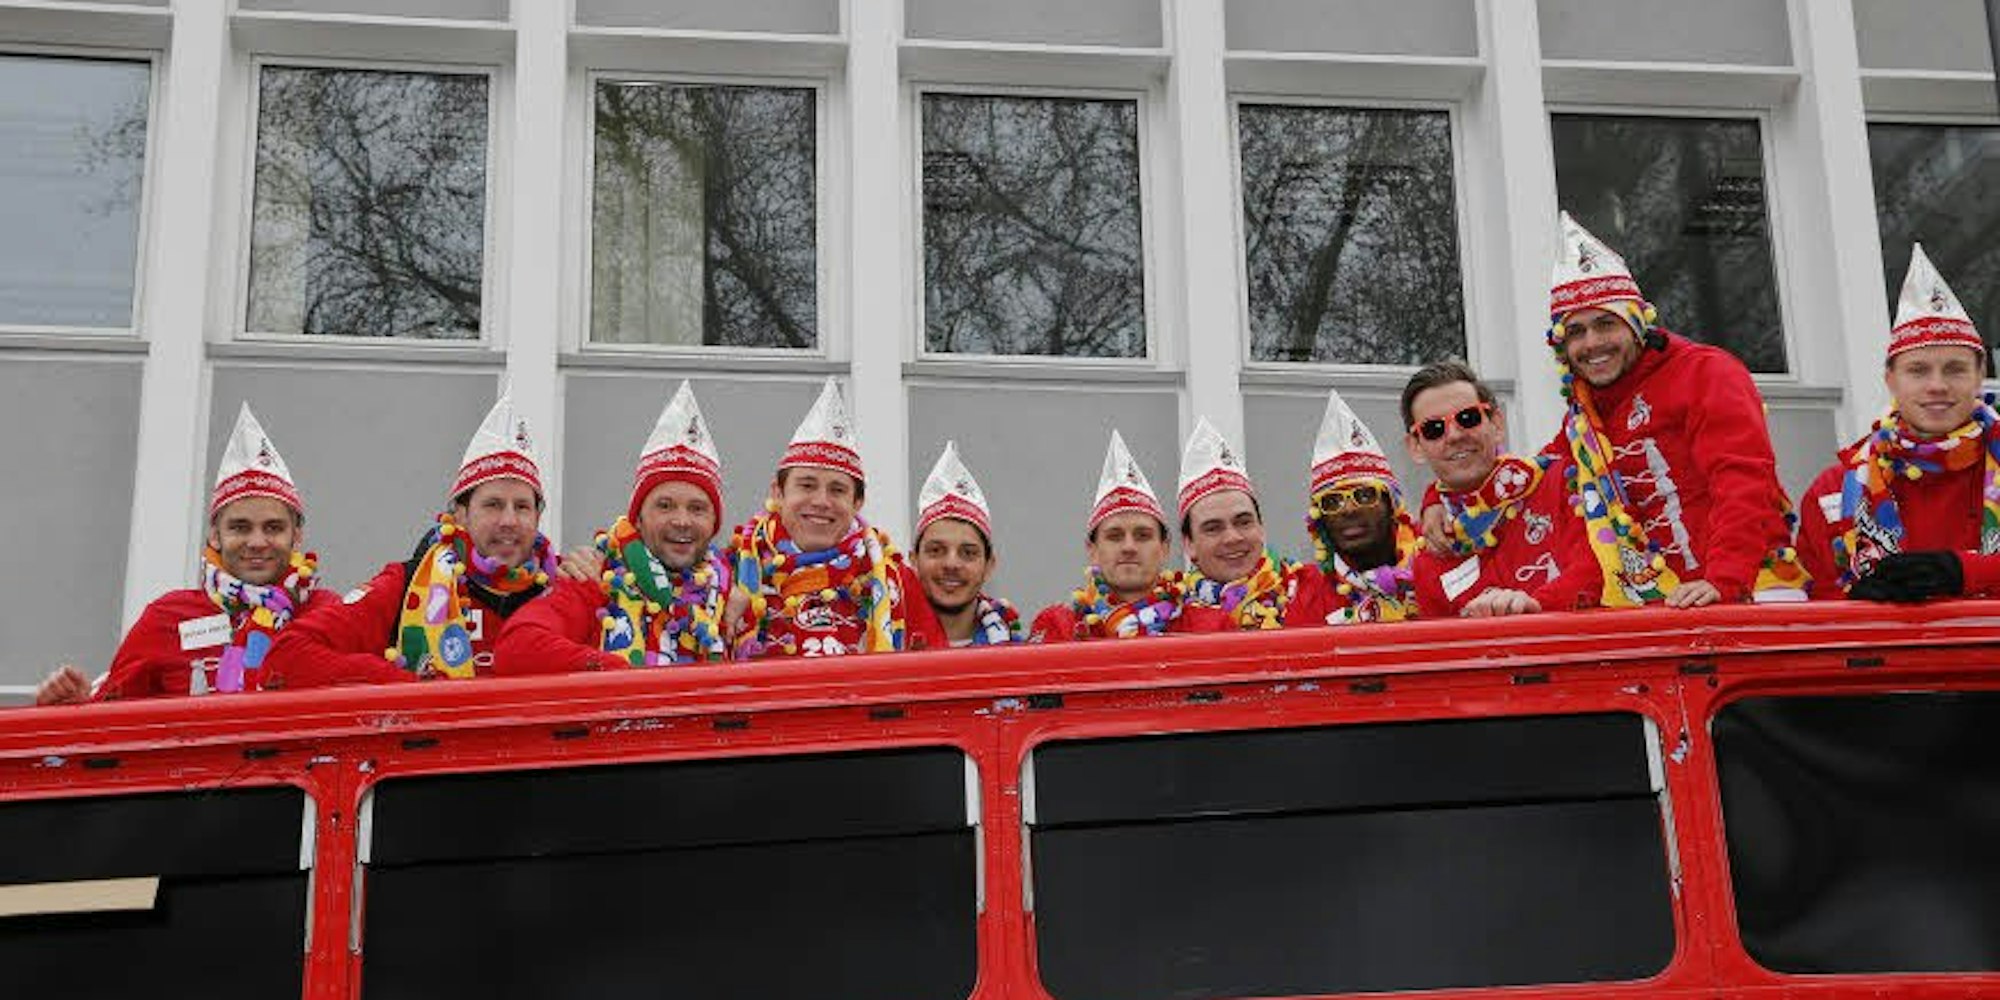 Im Doppeldecker-Bus unter anderem dabei: Die FC-Spieler Anthony Modeste, Thomas Kessler, Leonardo Bittencourt und Yannick Gerhardt